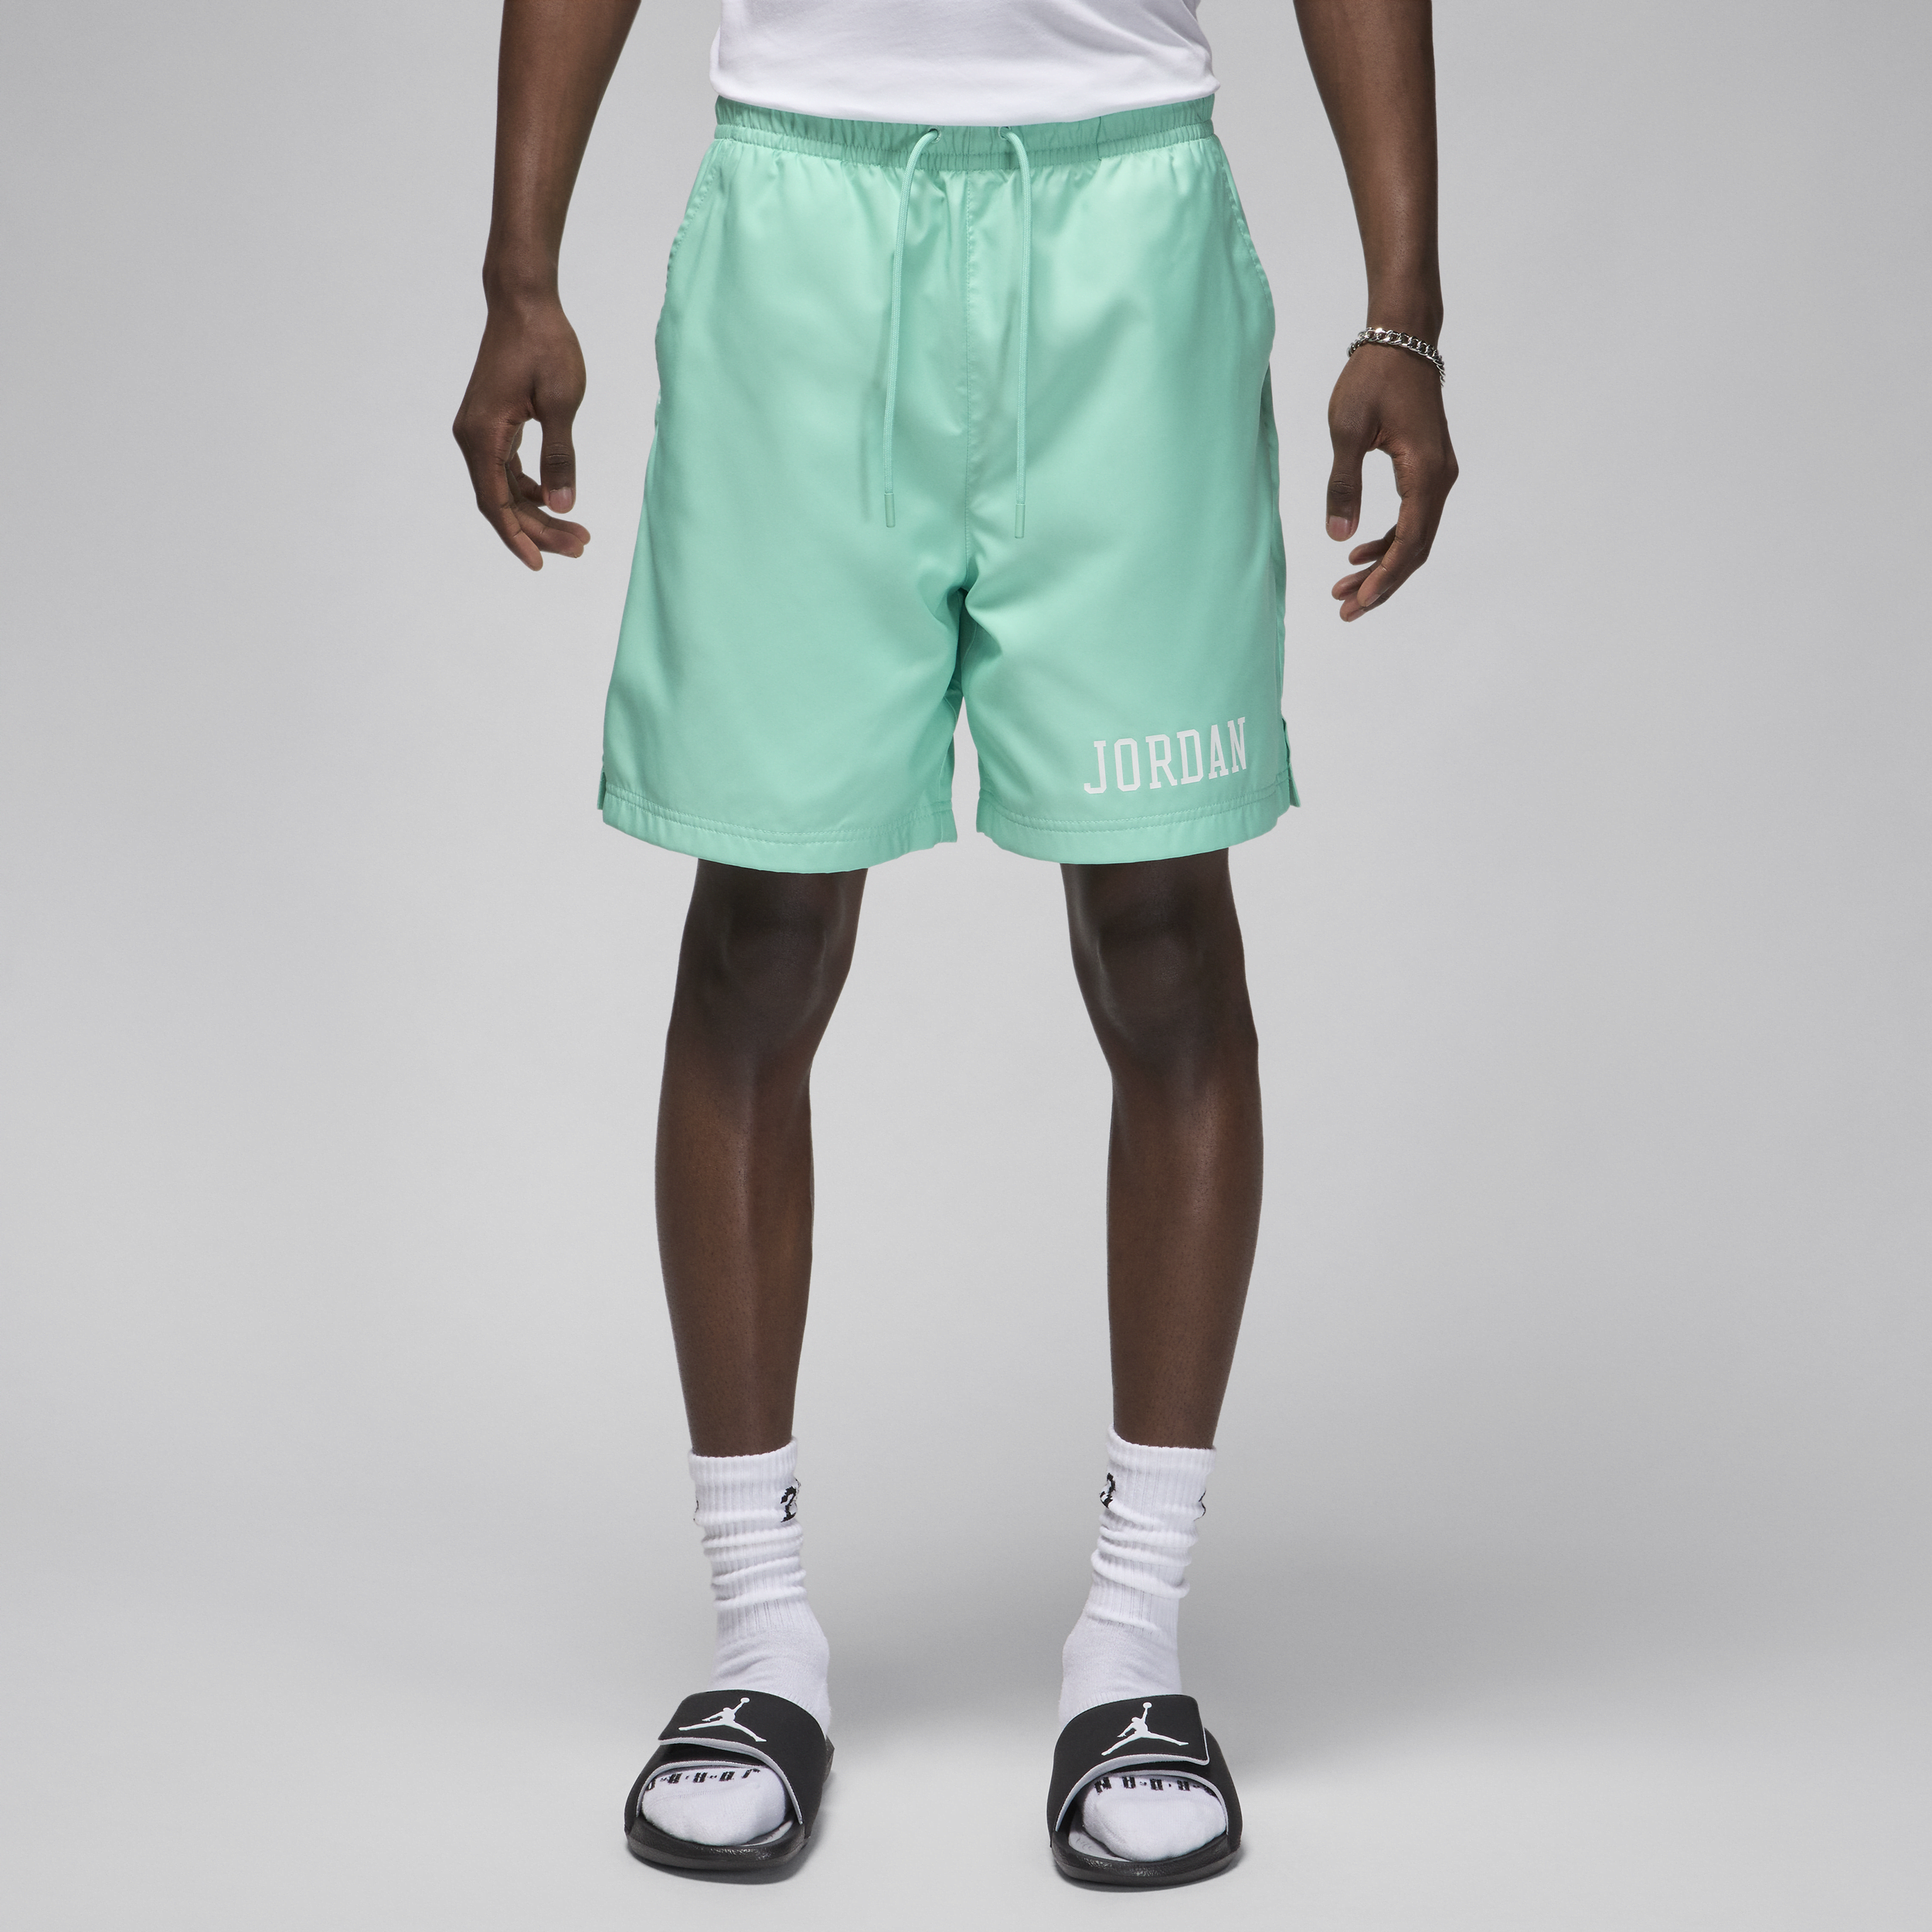 Jordan Essentials Pantalón corto piscina - Hombre - Verde